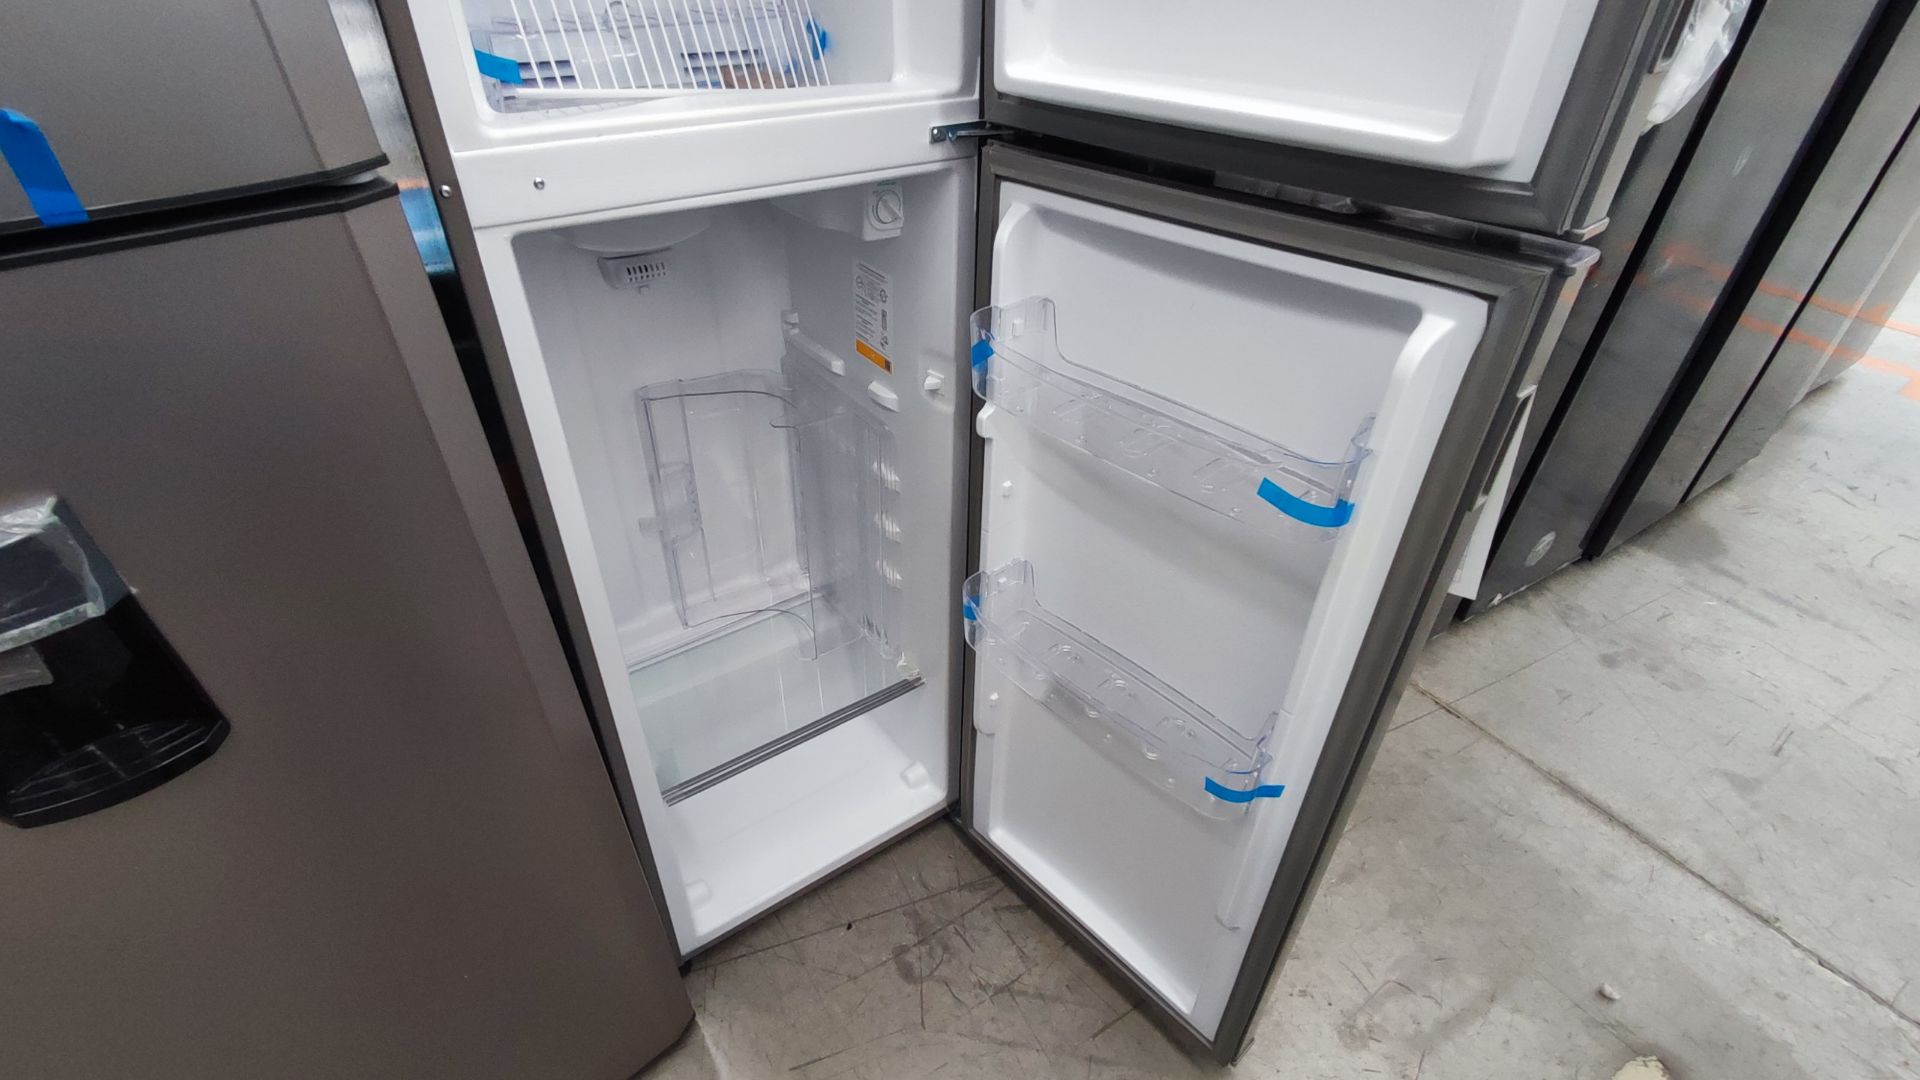 1 Refrigerador Marca Whirlpool, Modelo AT9007G03, Serie 1333816, Color Gris Detalles Estéticos. Fav - Image 5 of 12